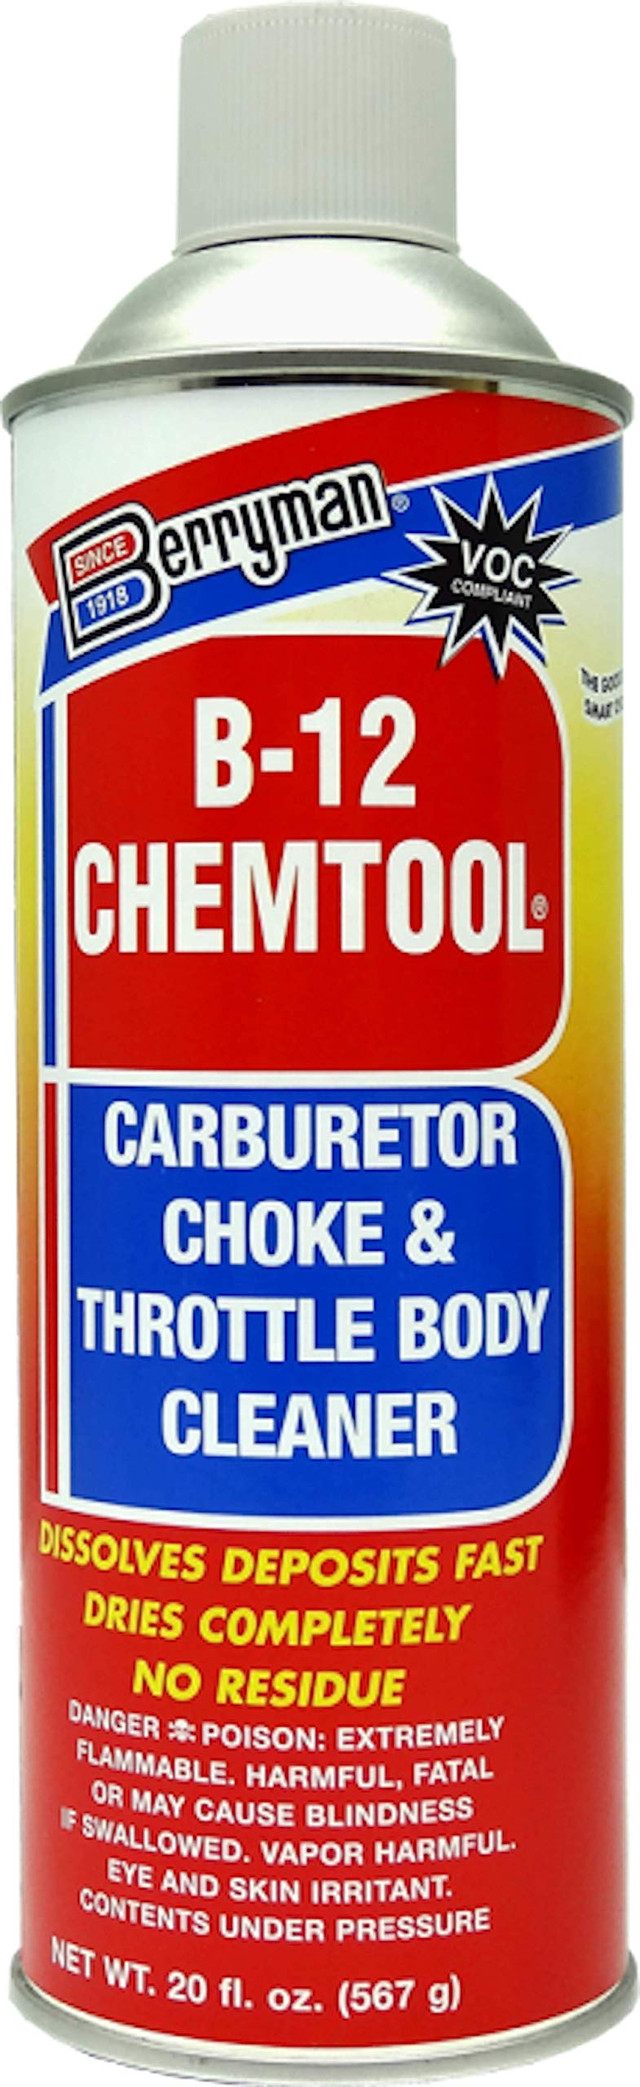 Limpador de carburador BERRYMAN b-12 chemtool - ca (0120c)